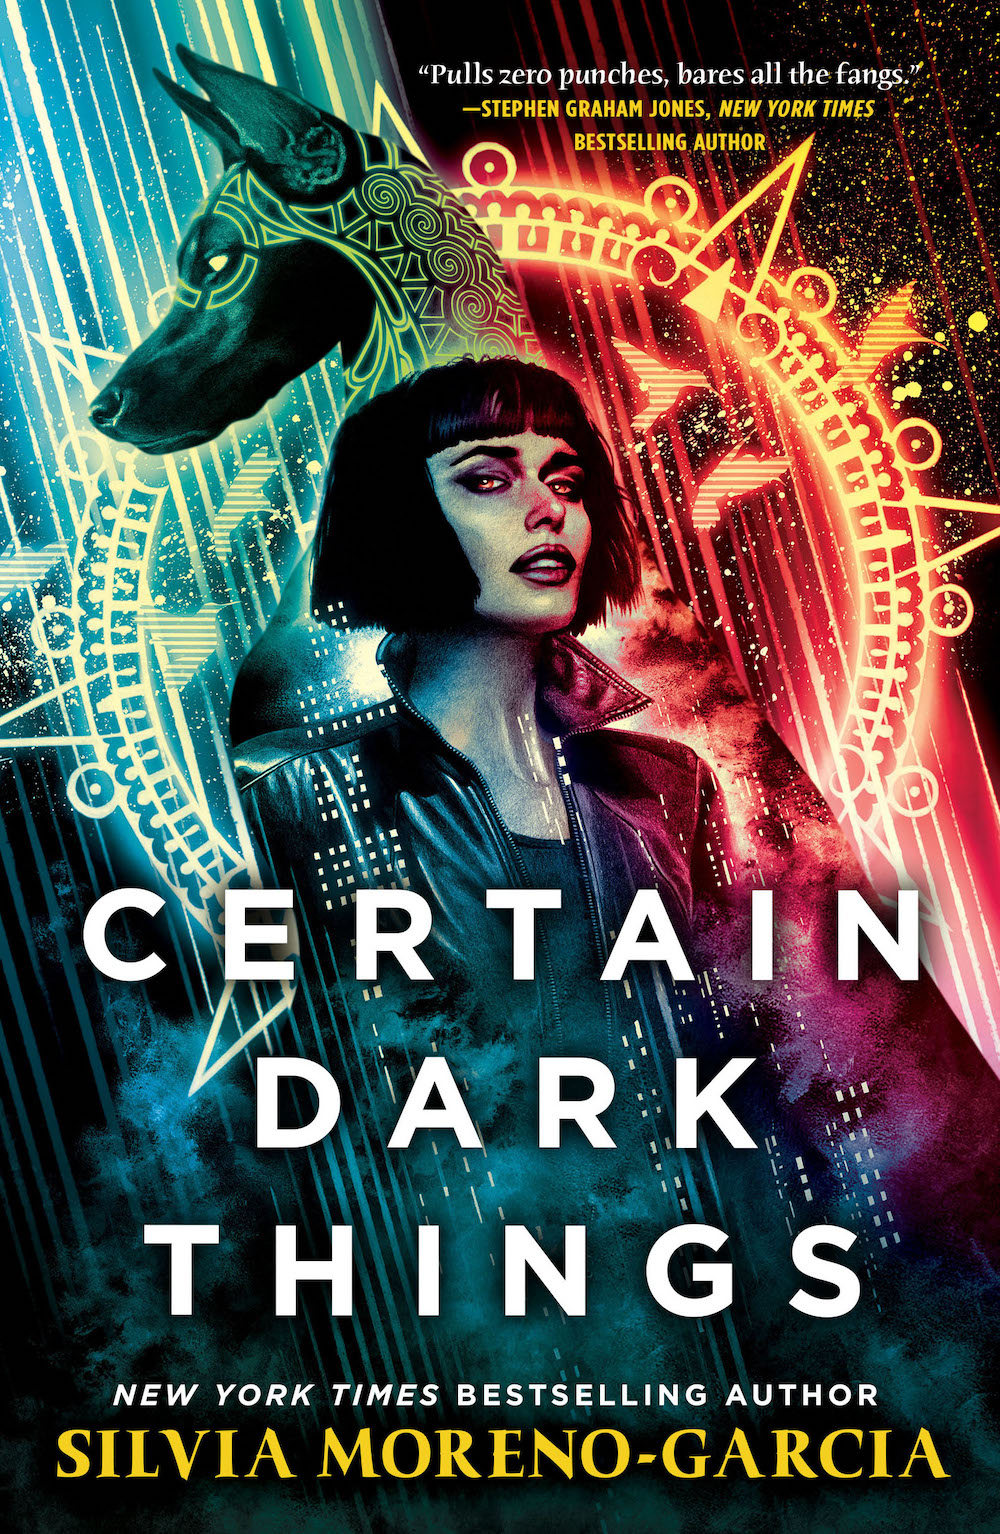 Certain Dark Things - 584